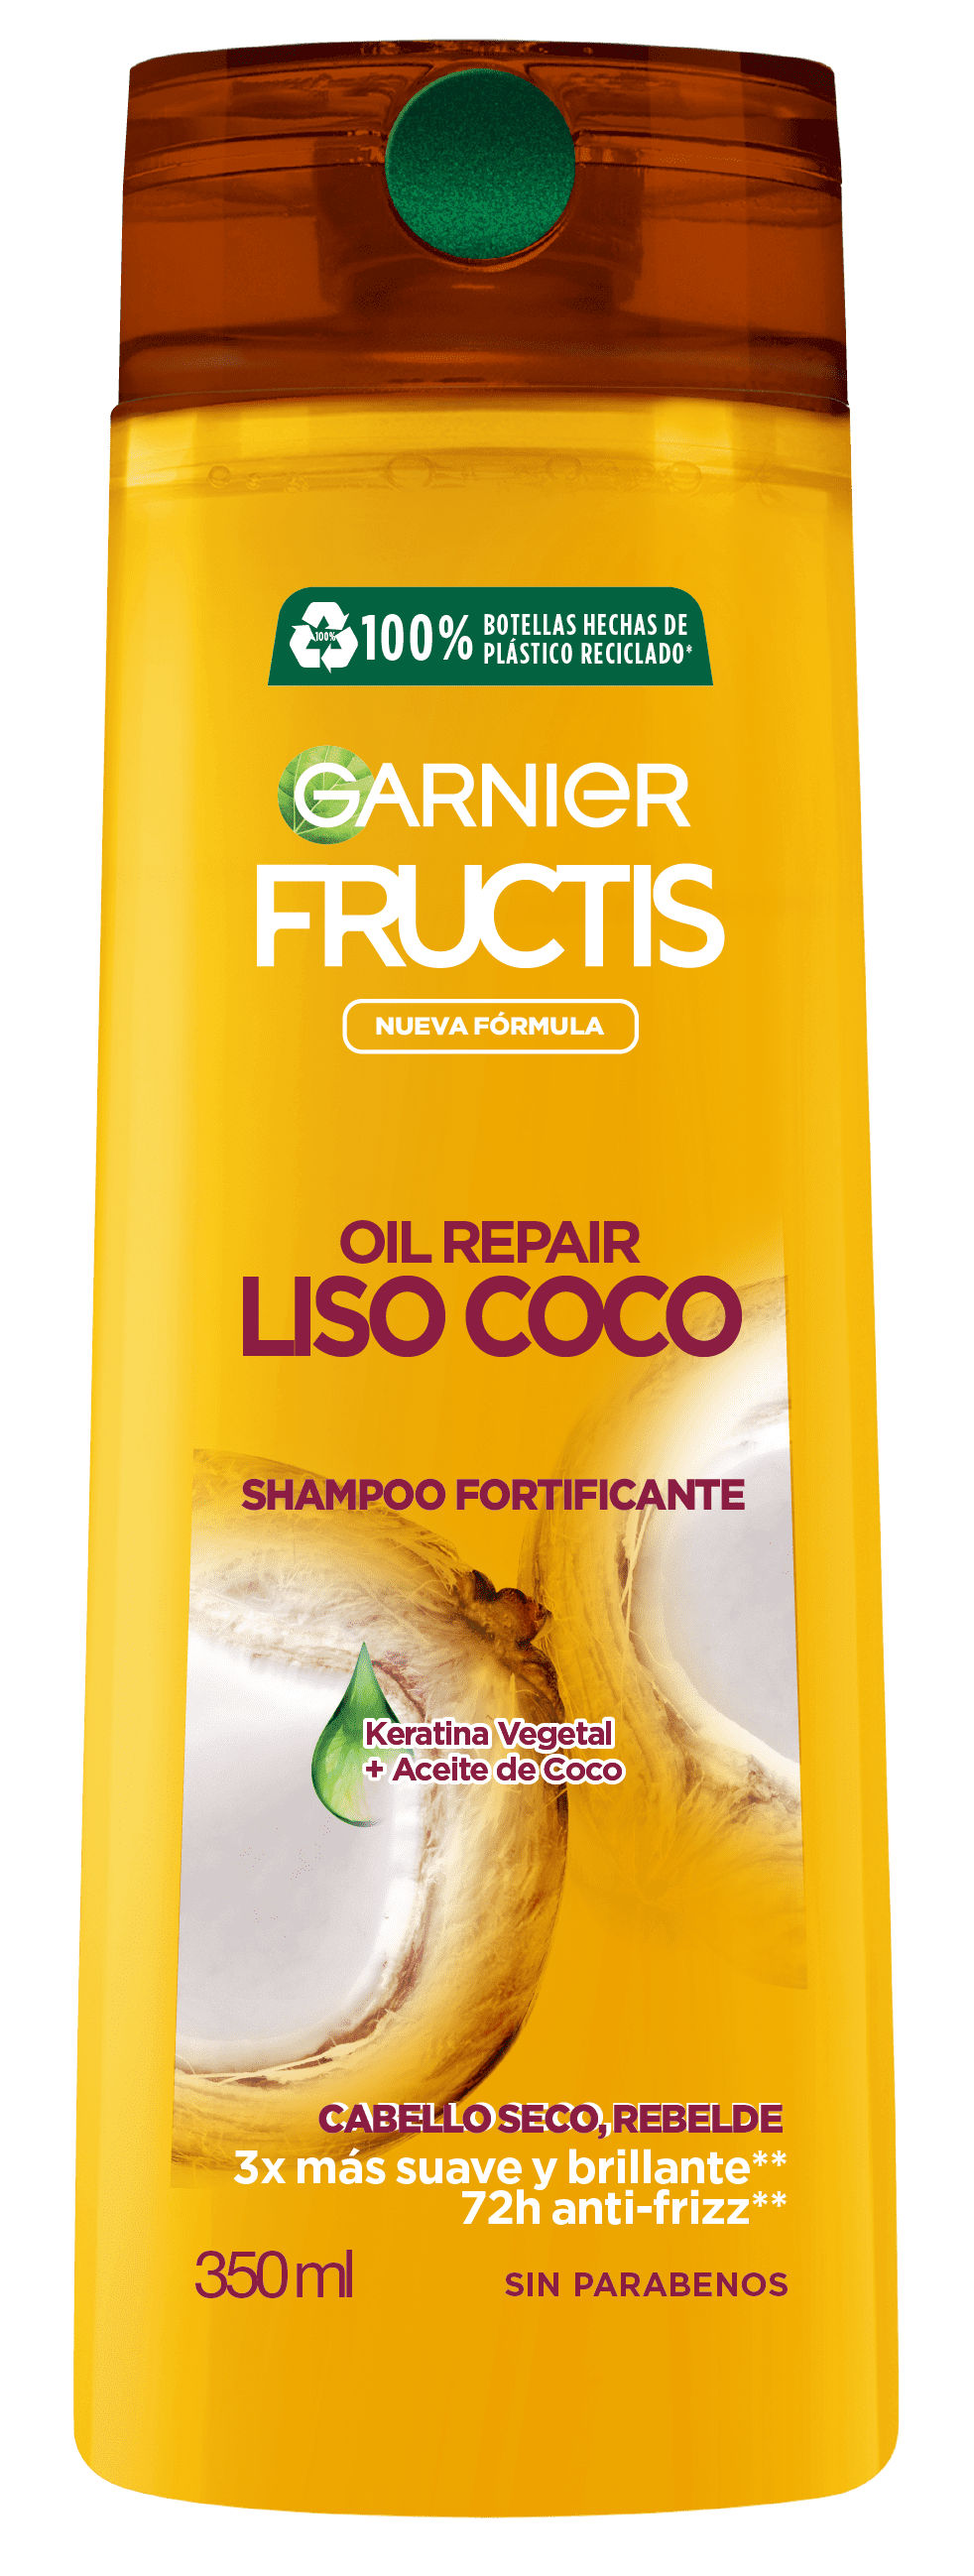 Fructis Shampoo Oil Repair Liso Coco x 350 ml.